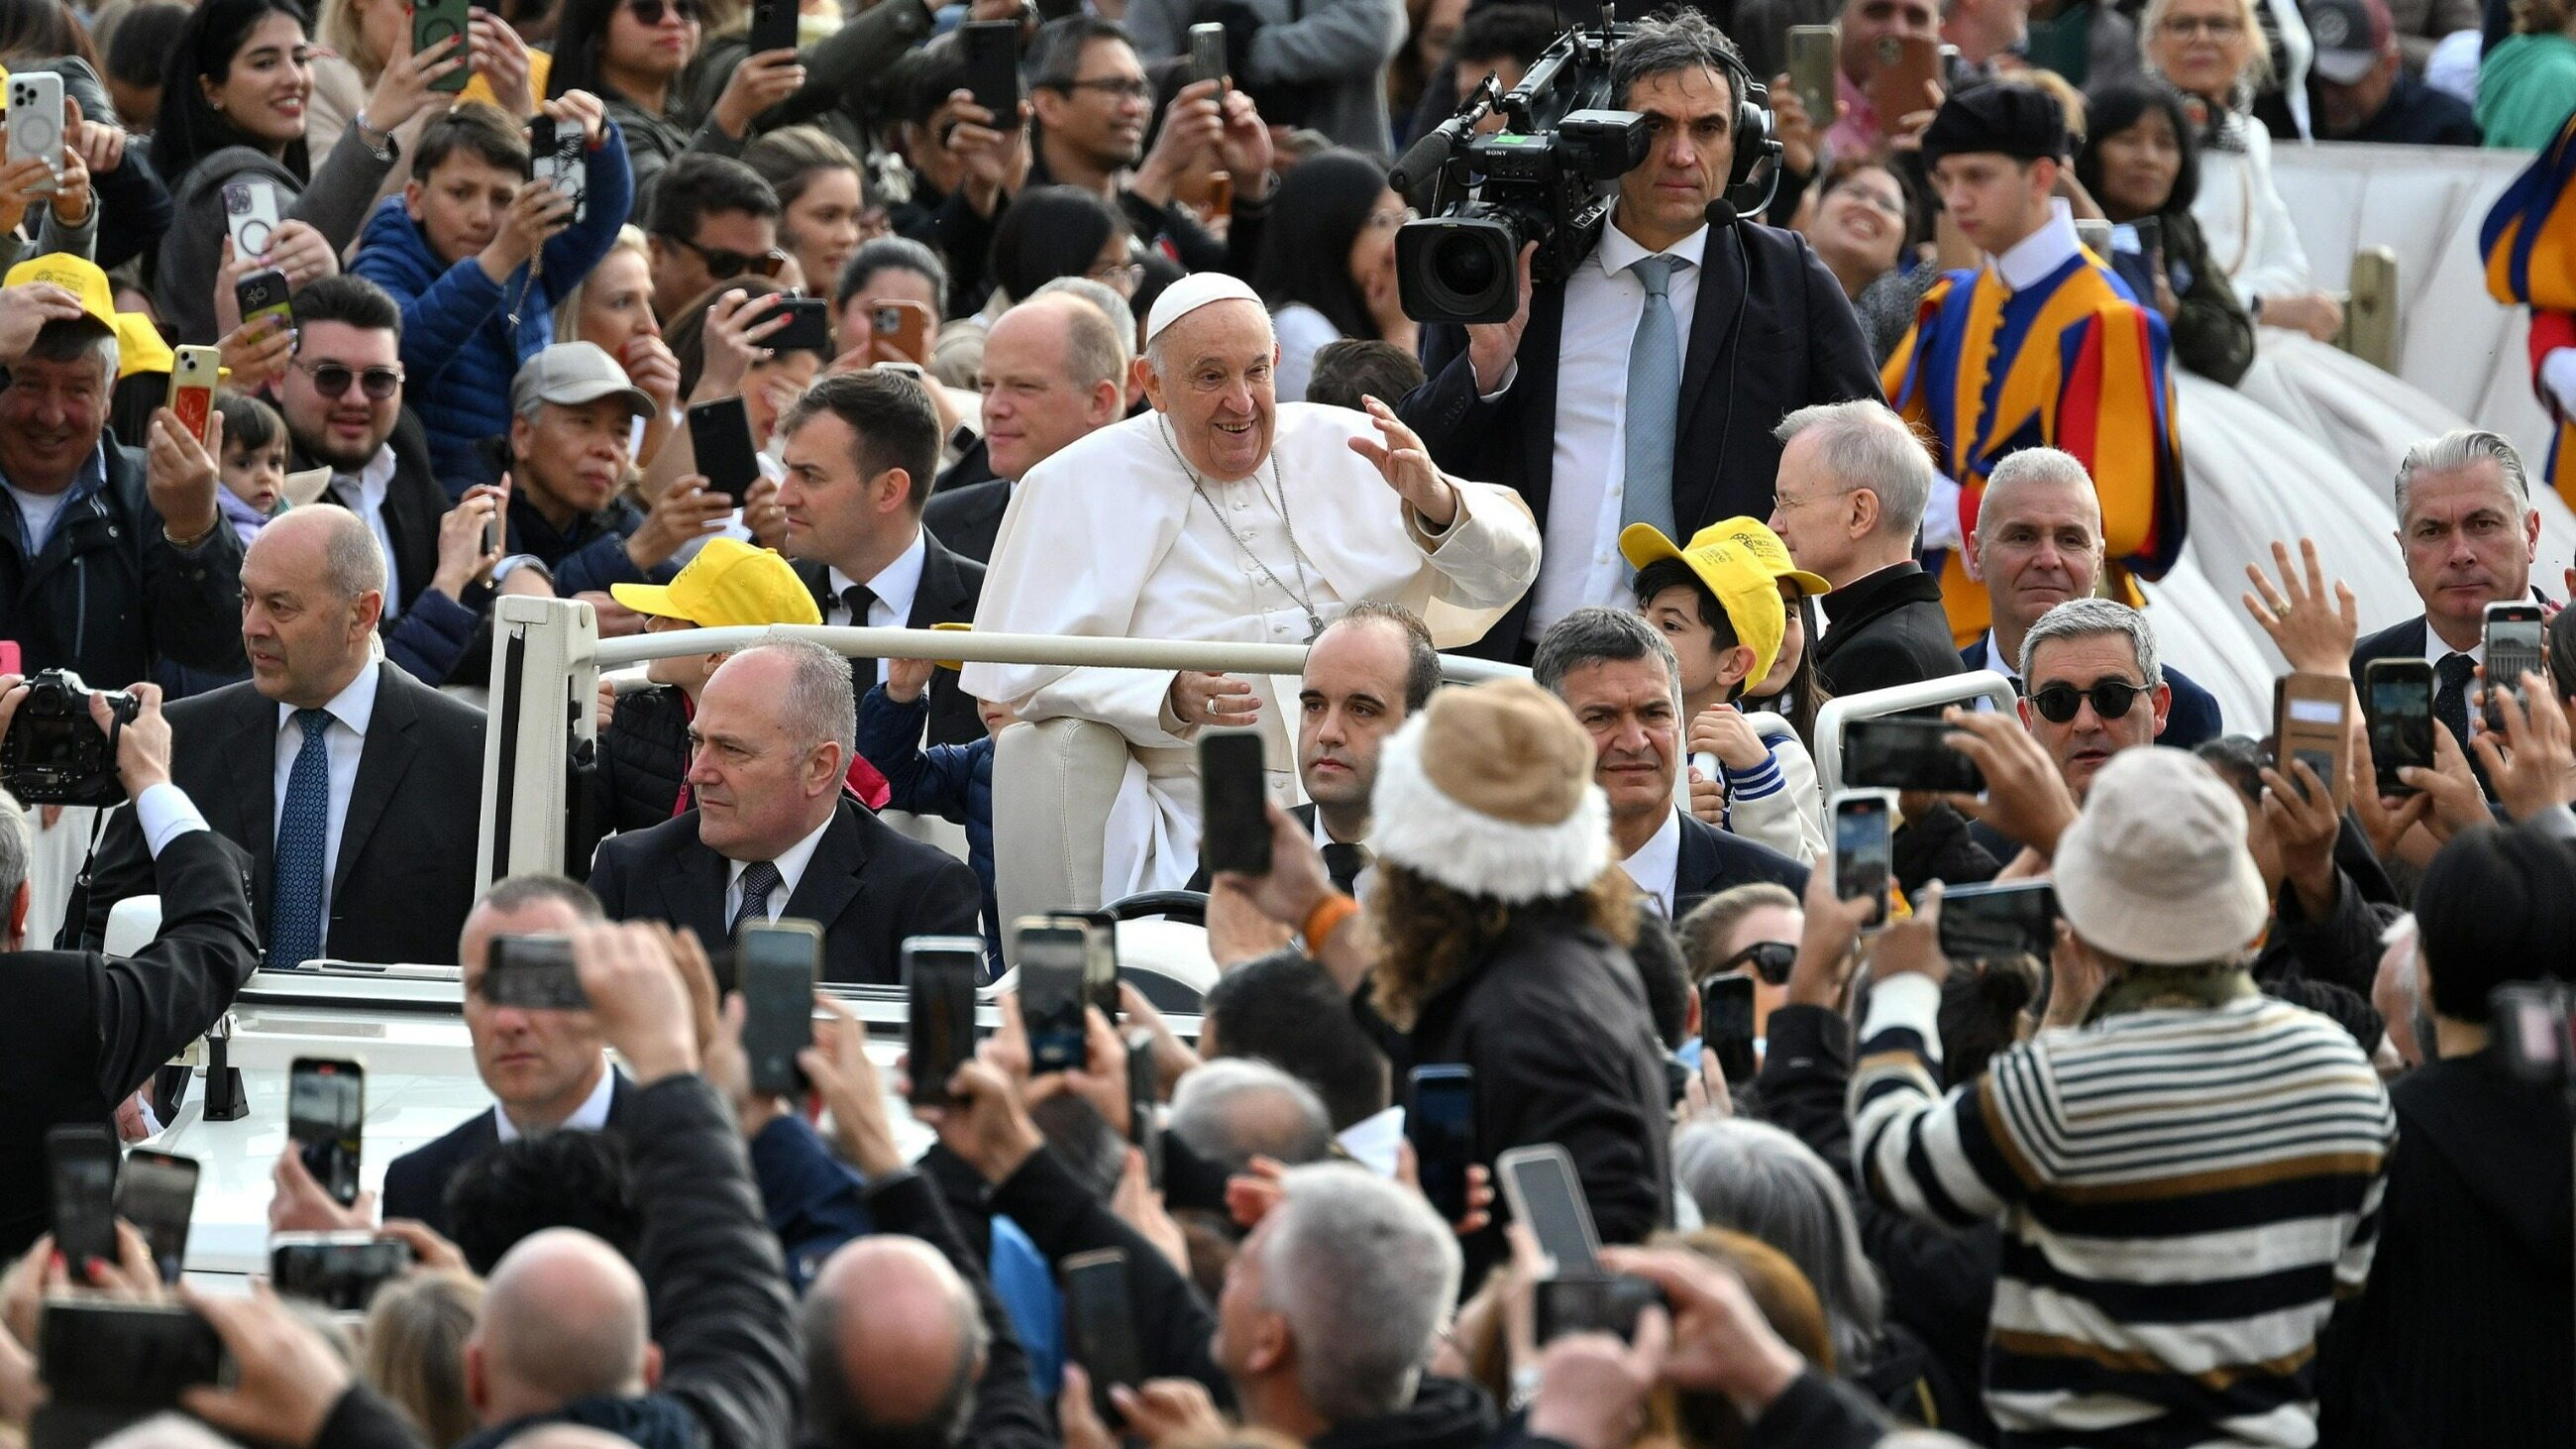 papież usłyszał przejmujące pytanie od dziewczynki. nie wahał się z odpowiedzią